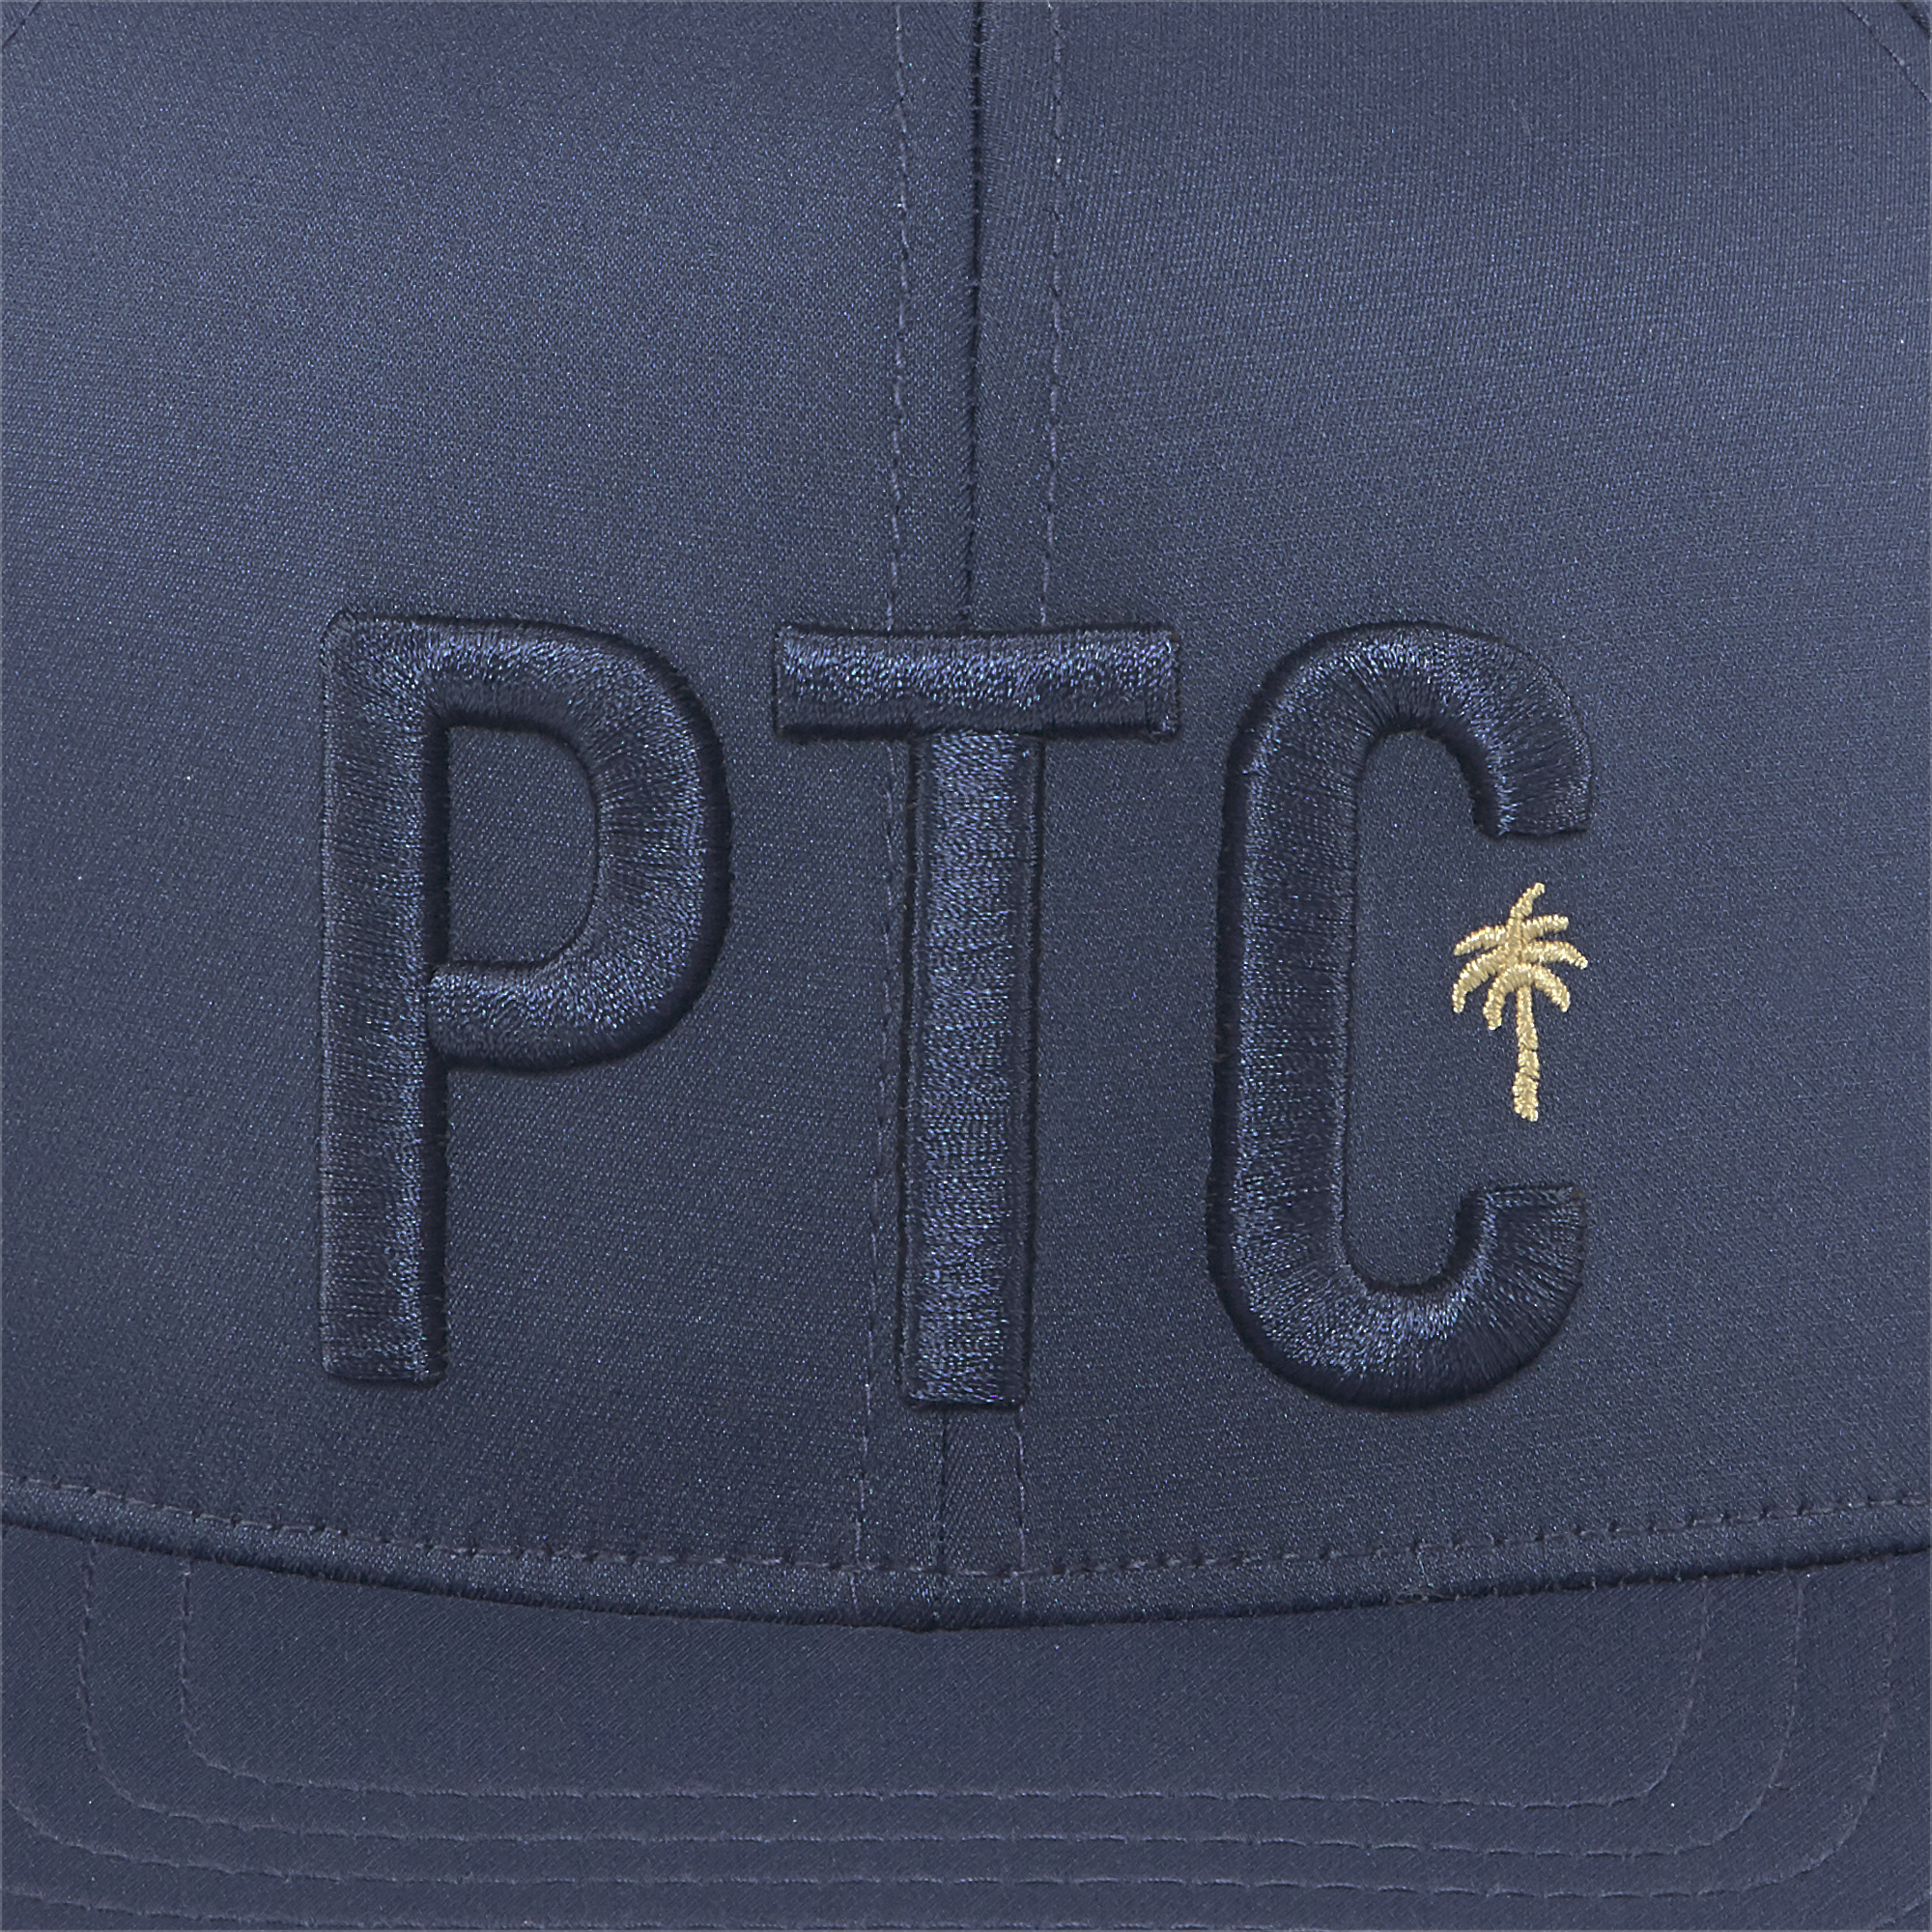 PUMA X PTC Cap Navy Blazer